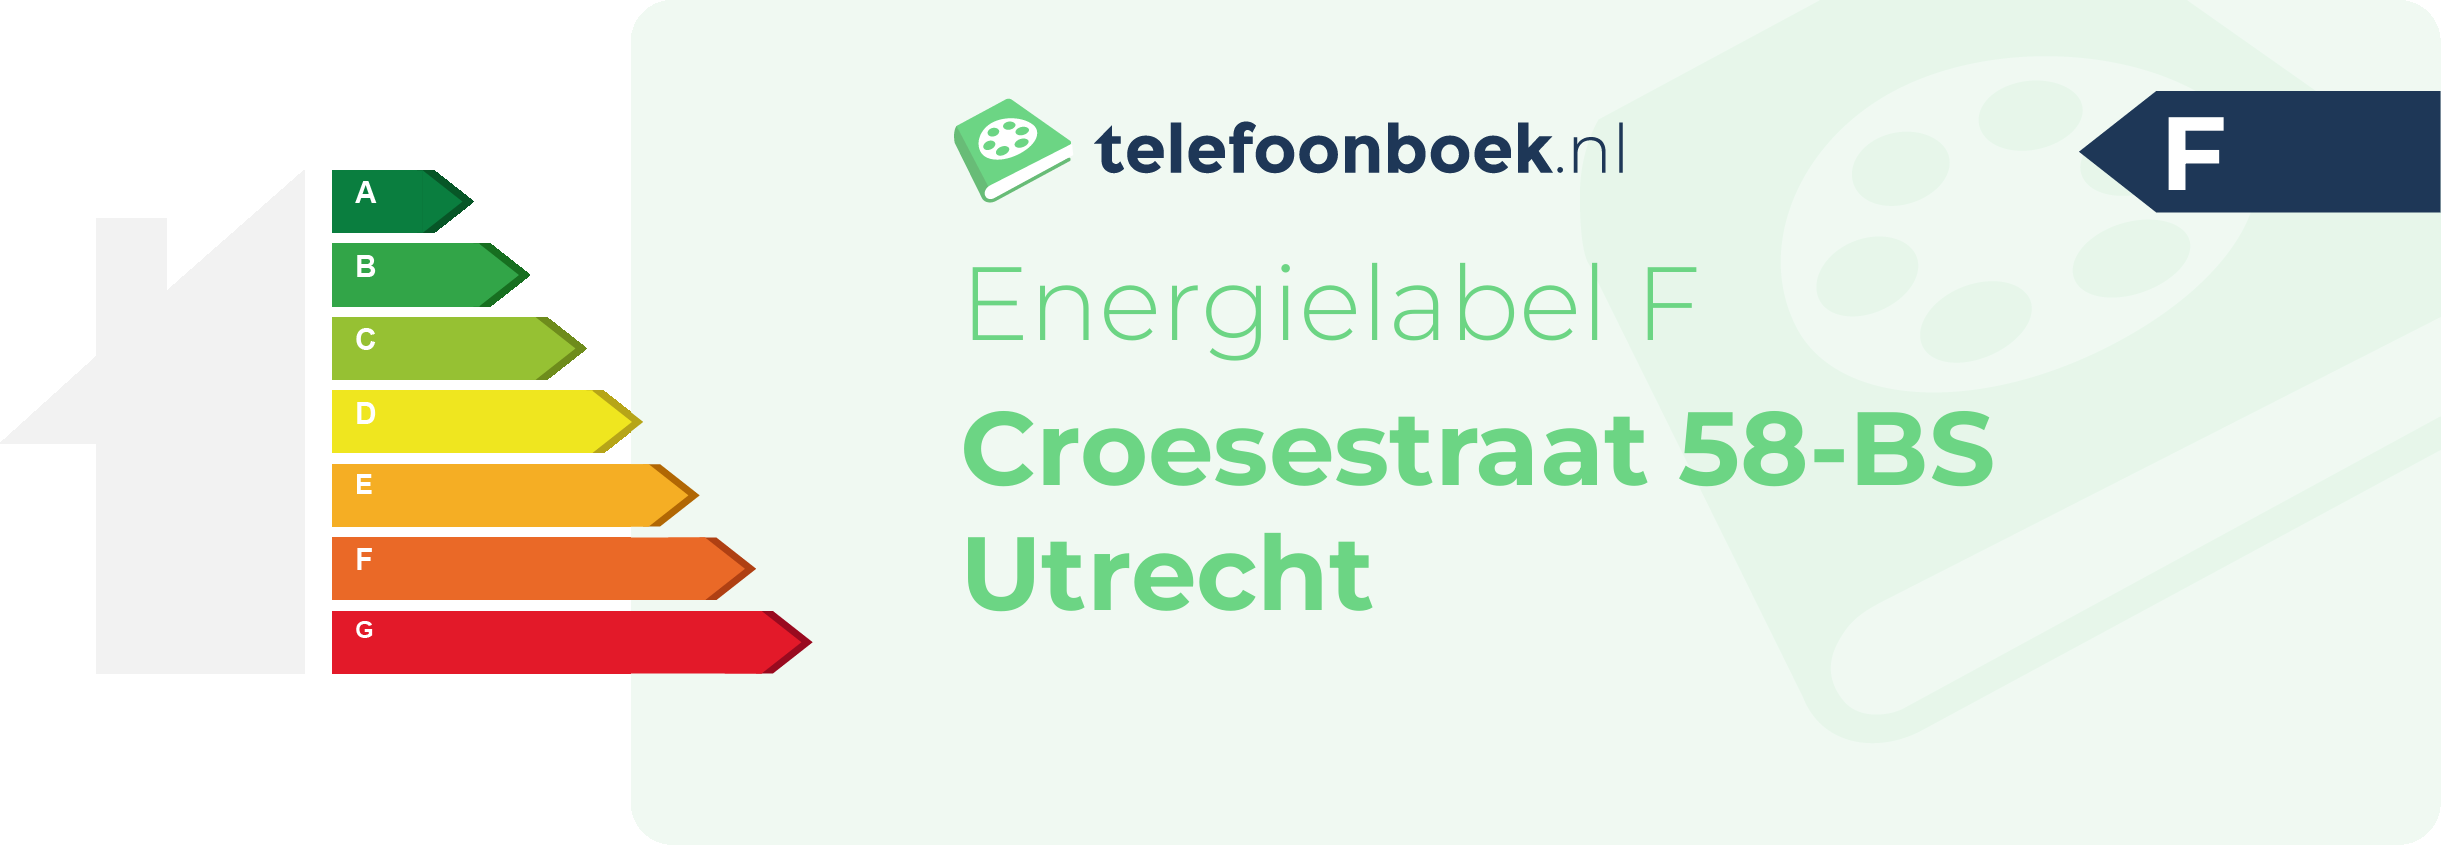 Energielabel Croesestraat 58-BS Utrecht